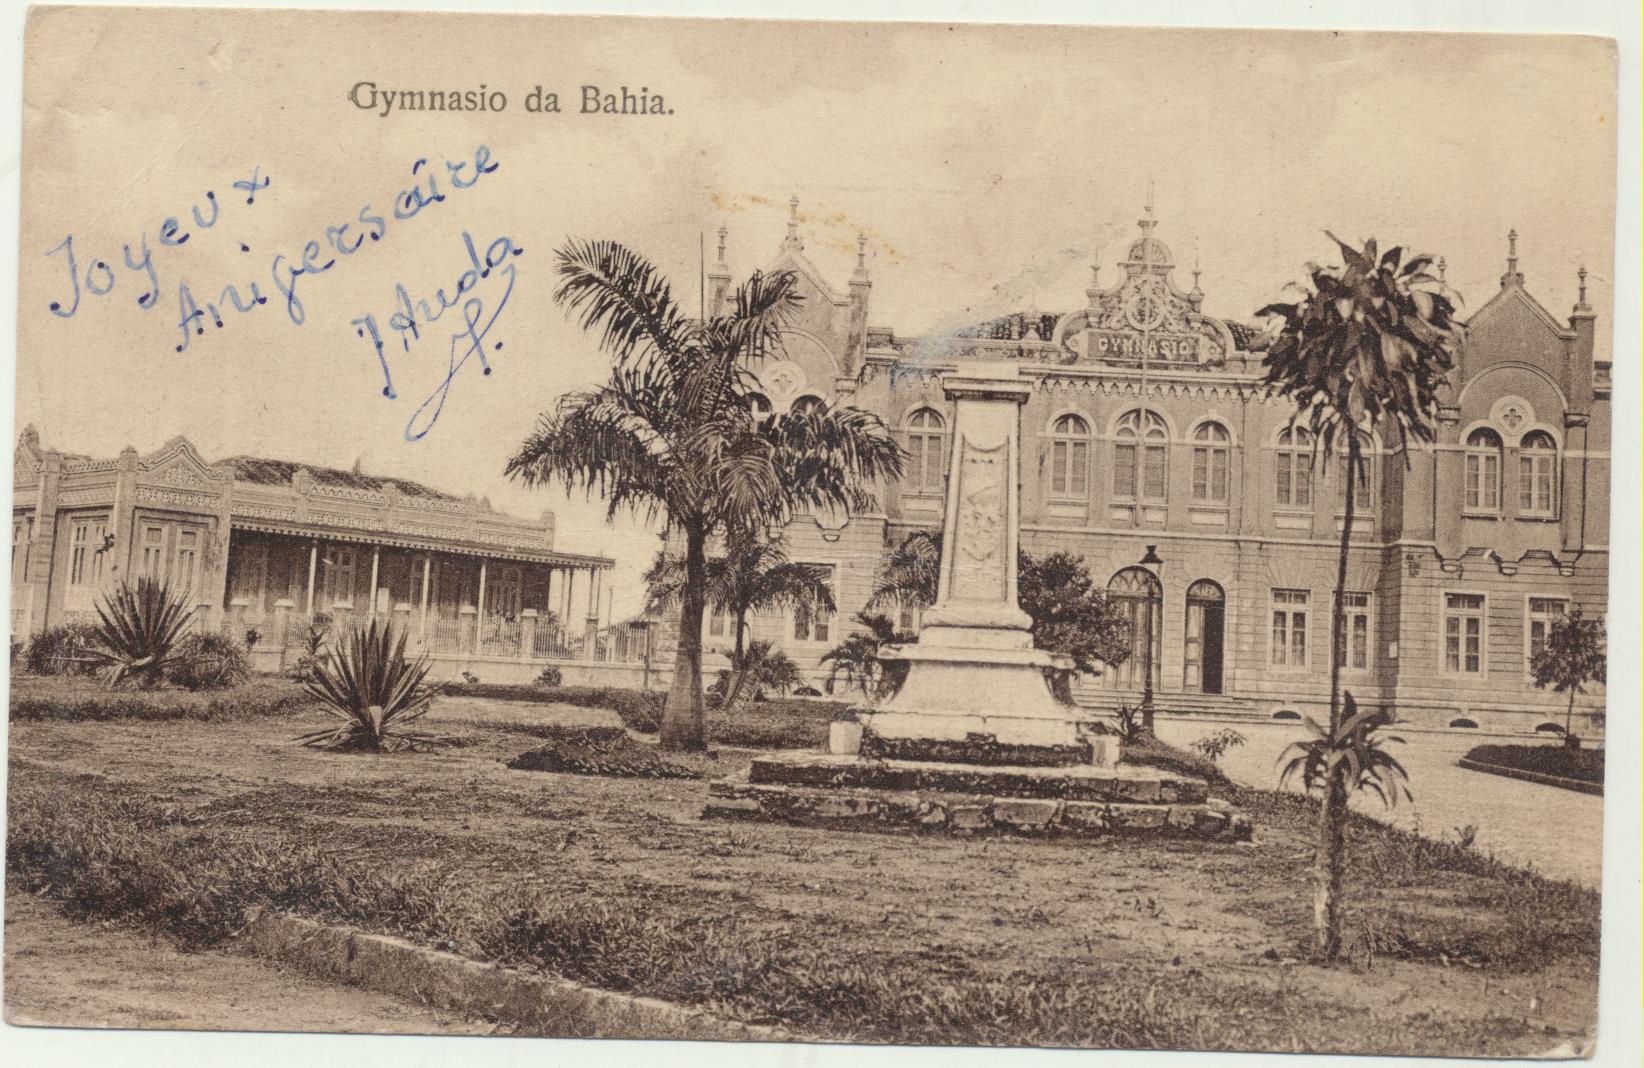 Brasil. Postal. Gymnasio da Bahía. Fechado el 1-Diciembre-1923